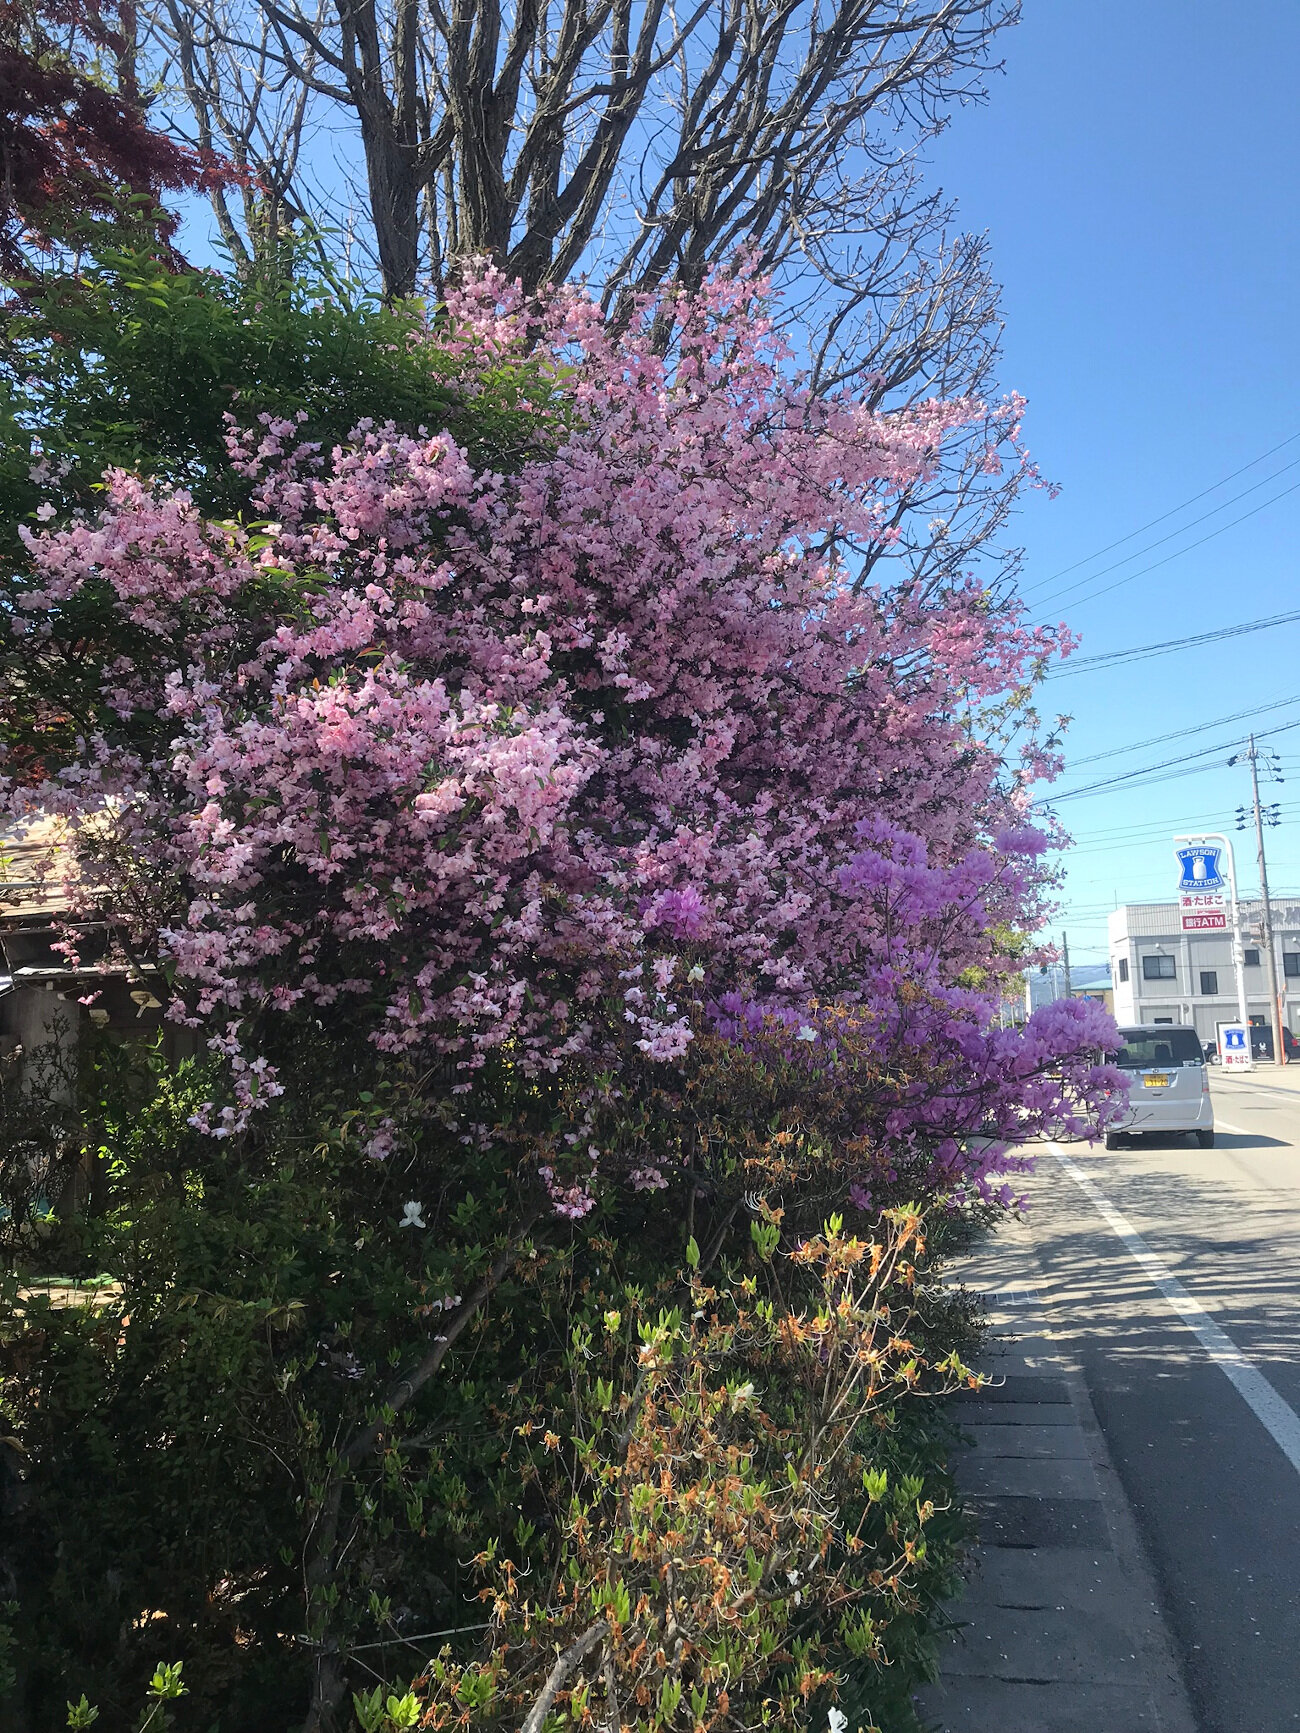 Flowering Bush in Takayama